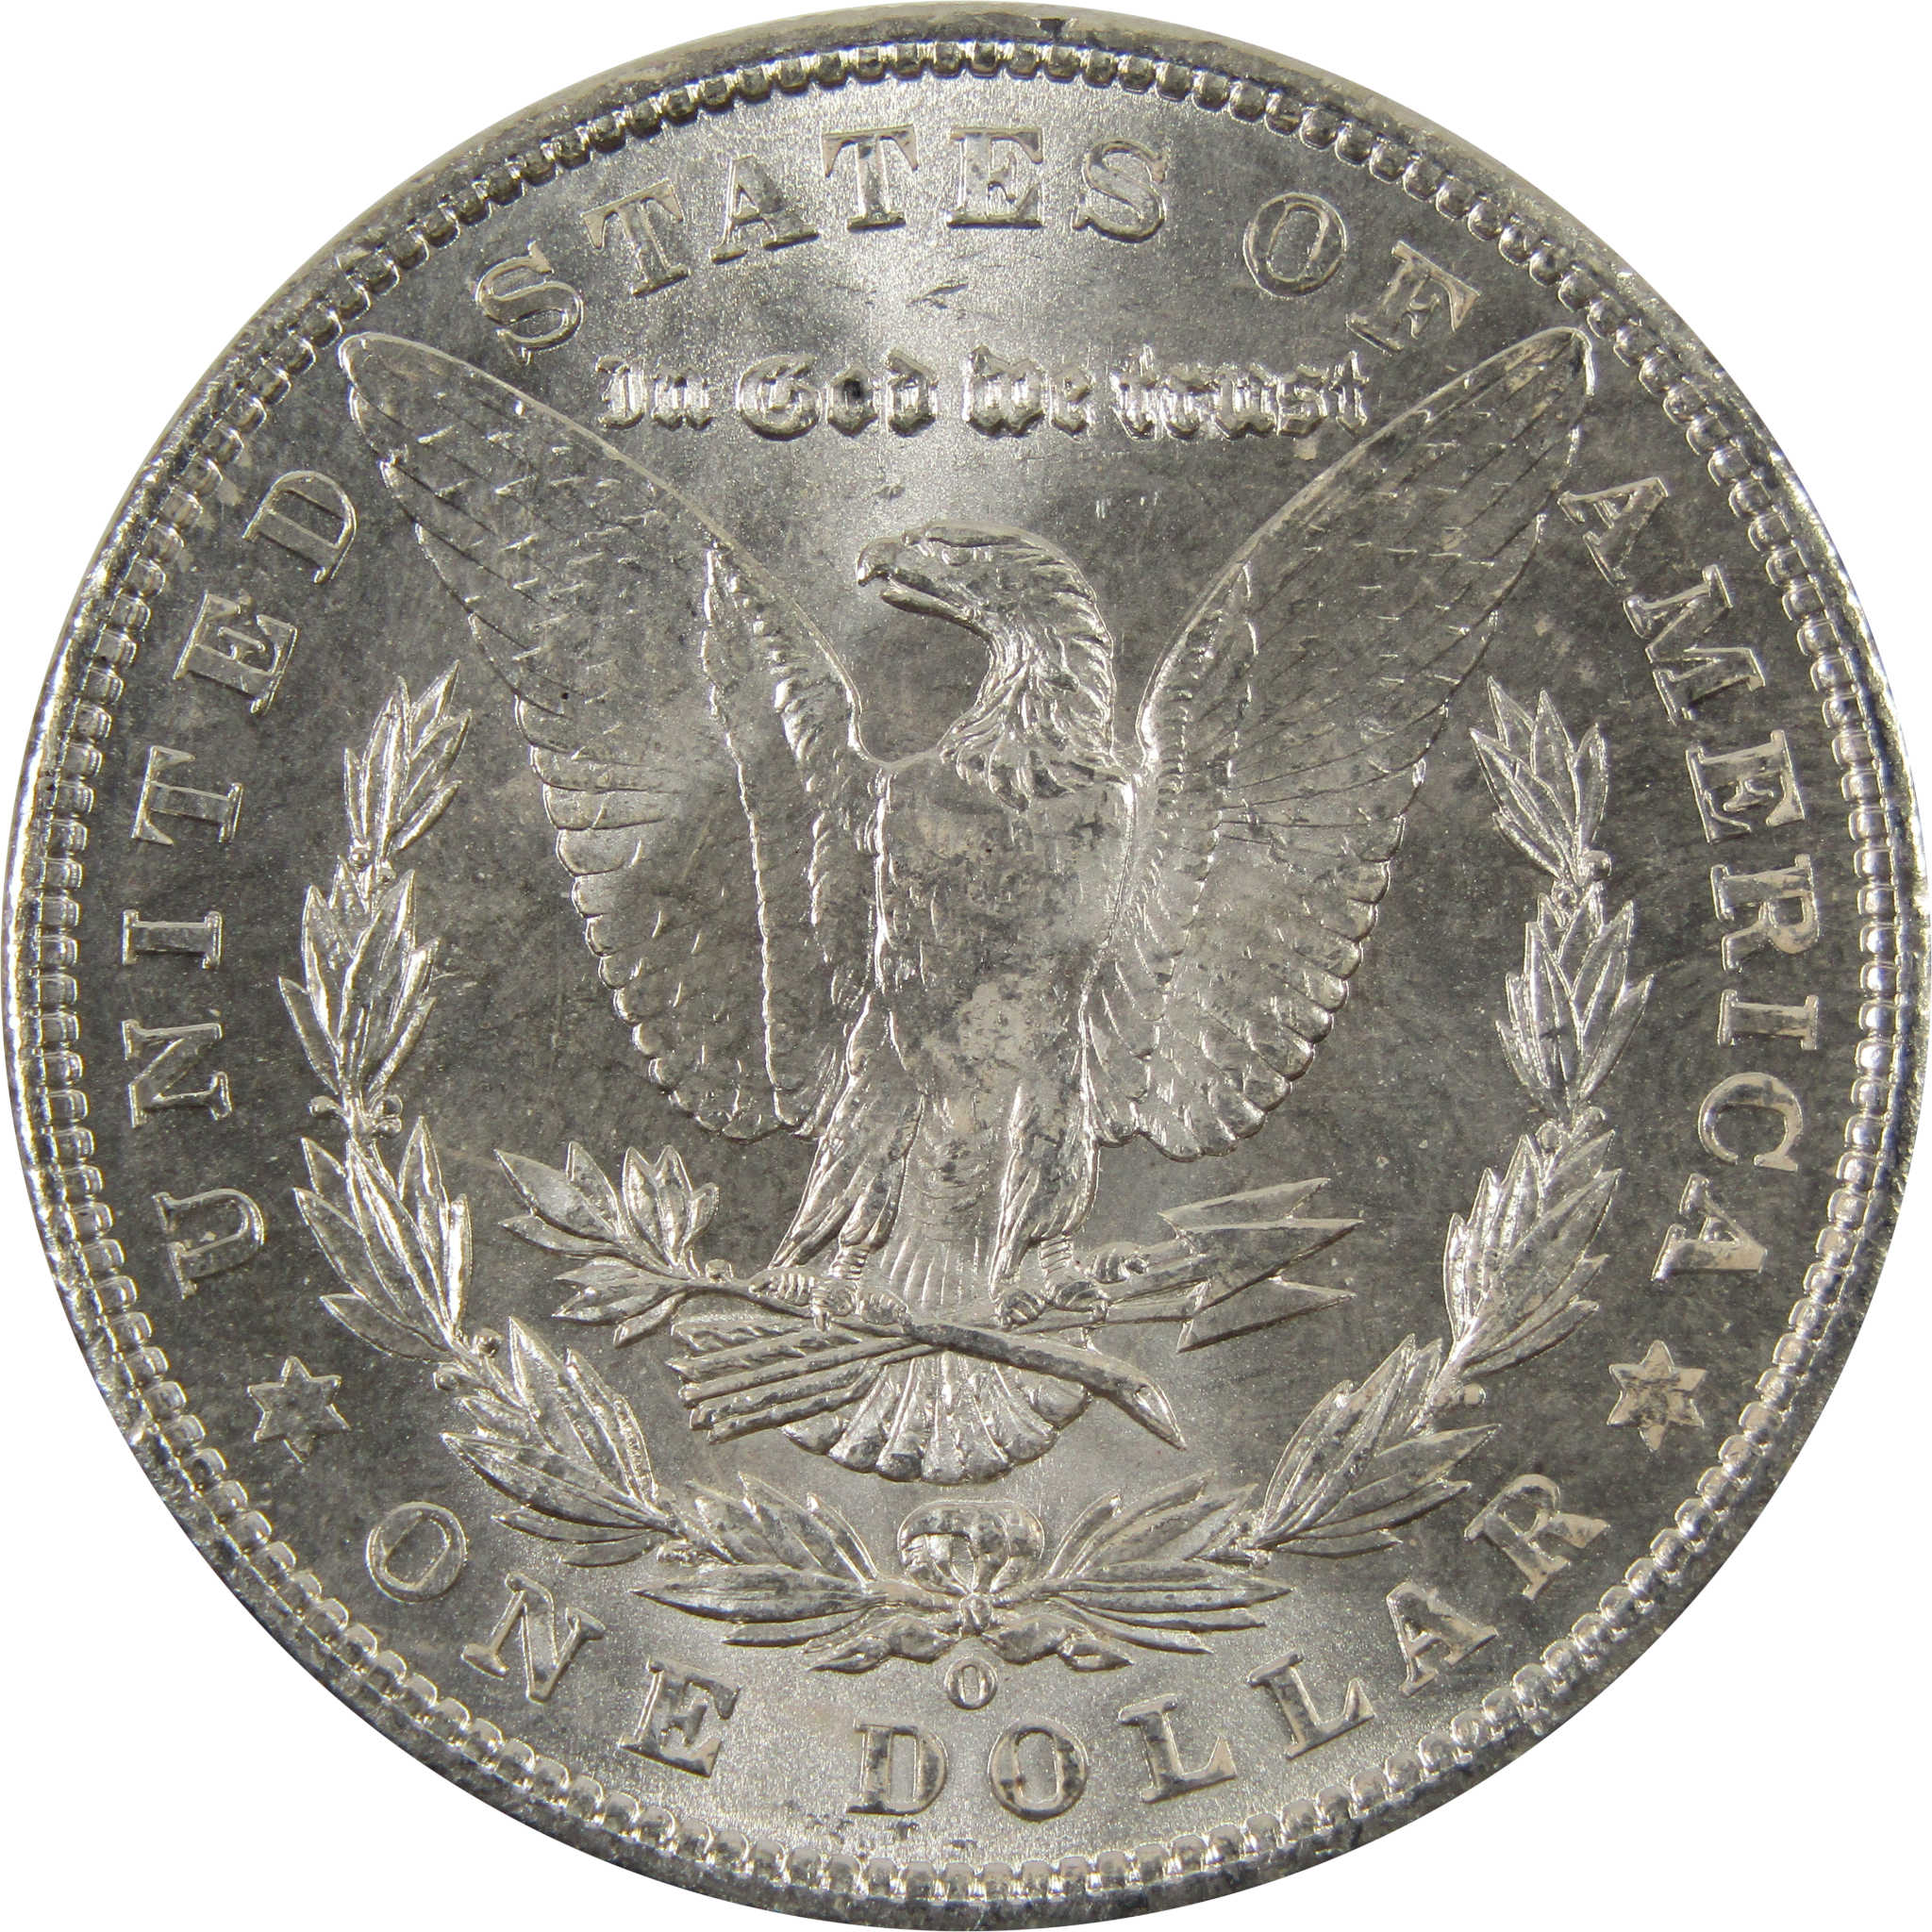 1903 O Morgan Dollar BU Choice Uncirculated 90% Silver $1 SKU:I7519 - Morgan coin - Morgan silver dollar - Morgan silver dollar for sale - Profile Coins &amp; Collectibles